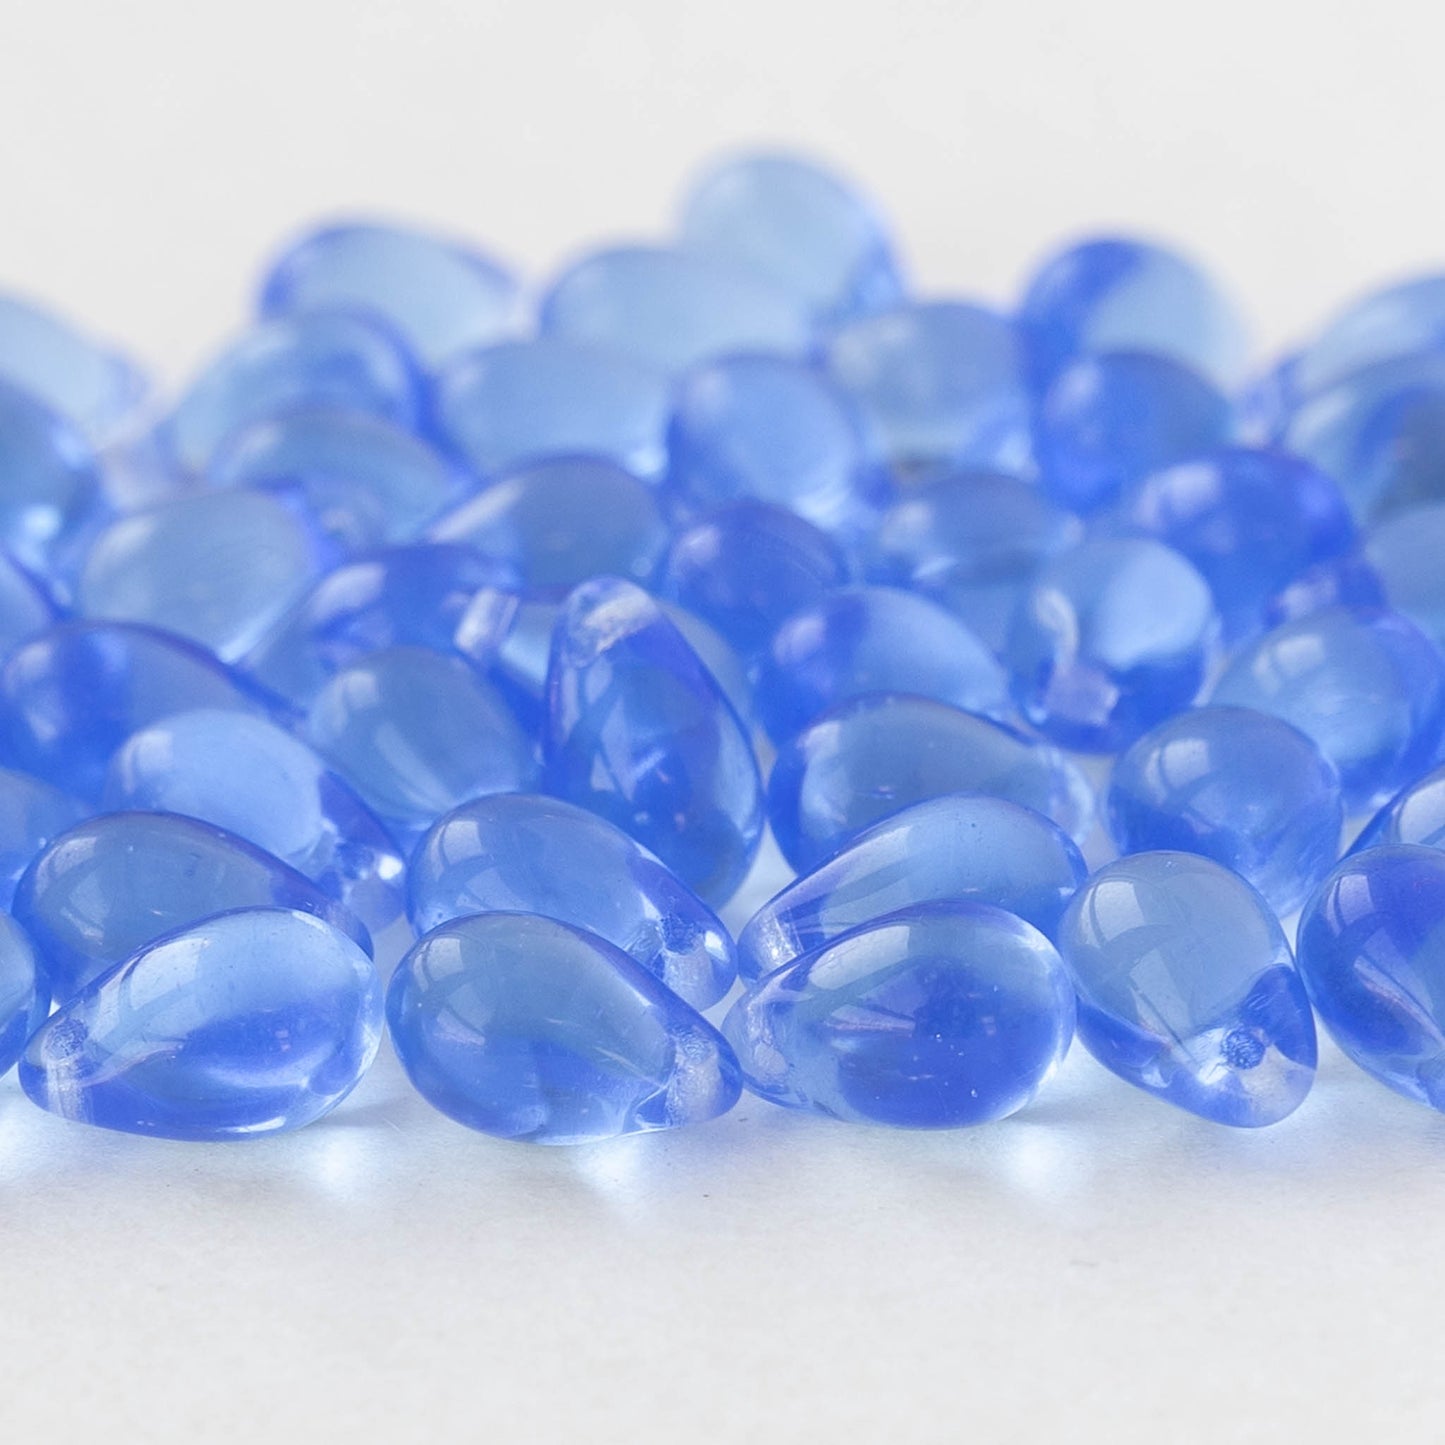 6x9mm Glass Teardrop Beads - Sapphire Blue - 50 Beads